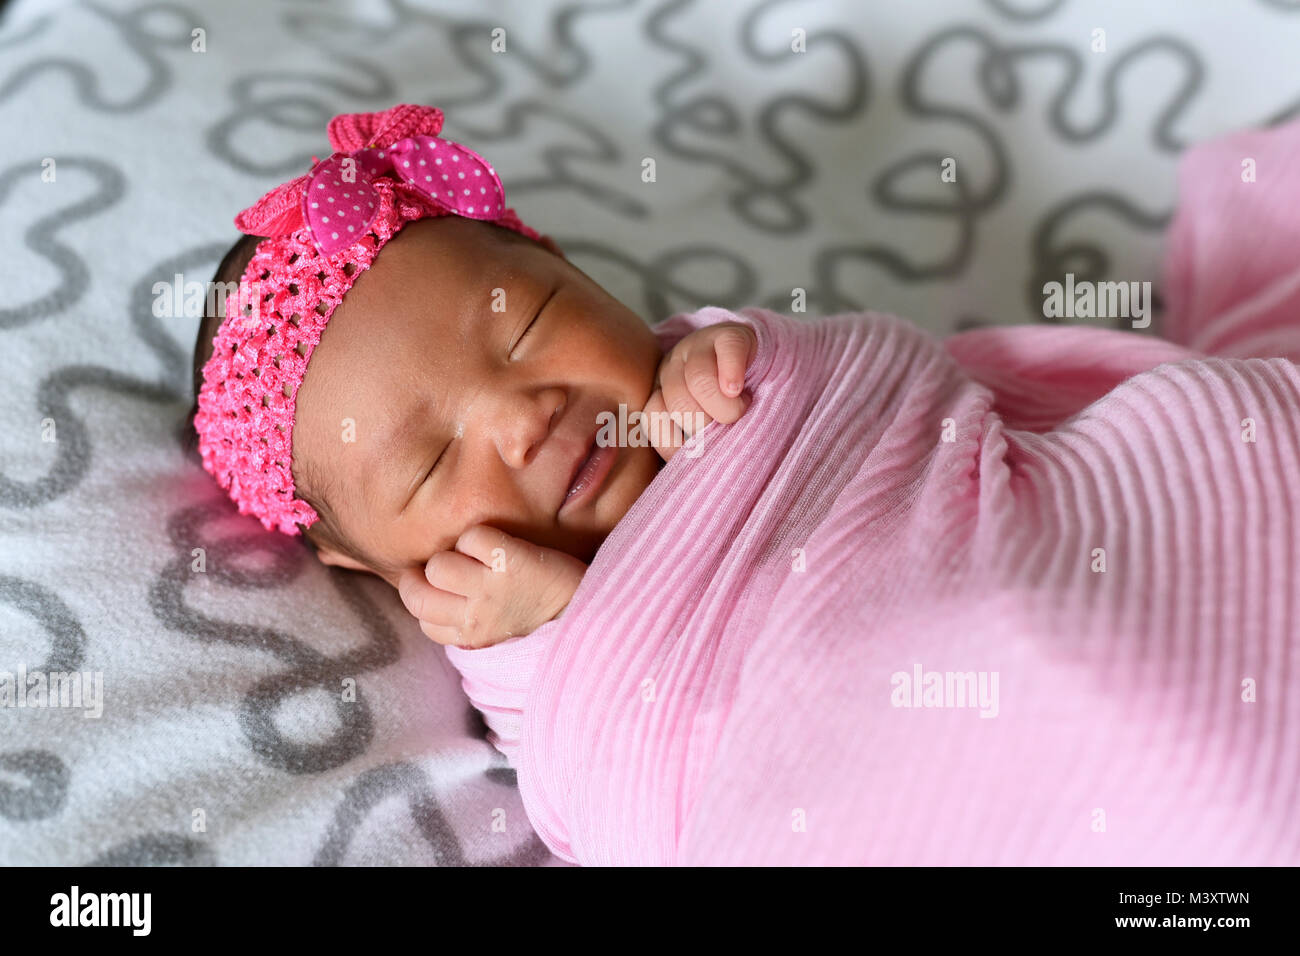 Asiatische neugeborenes Baby sleepin in rosa Tuch tragen Kopfband.  Neugeborene und Mutterschaft Konzept Stockfotografie - Alamy